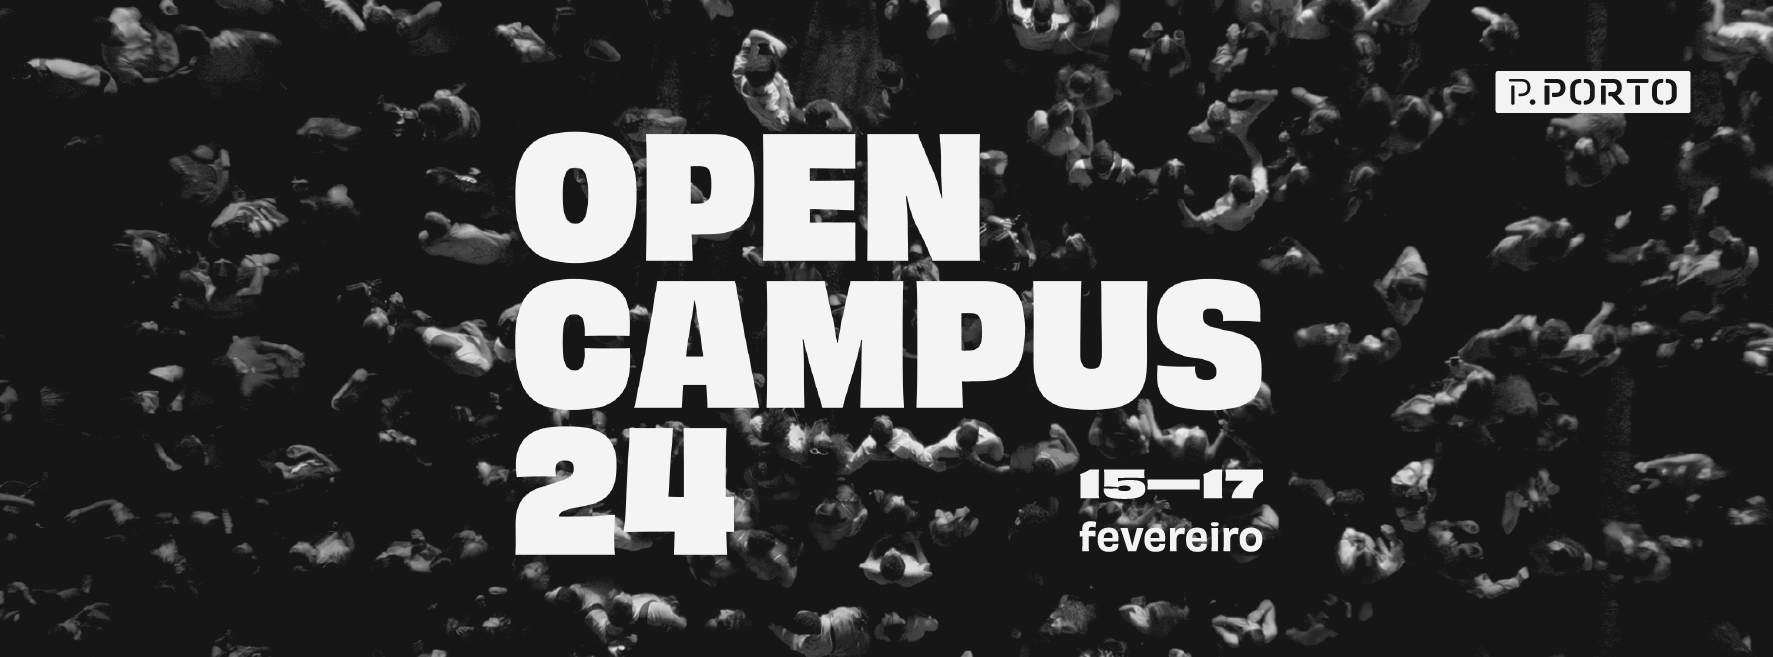 Convite Open Campus’24 | ESMAE | Politécnico do Porto (P.PORTO)